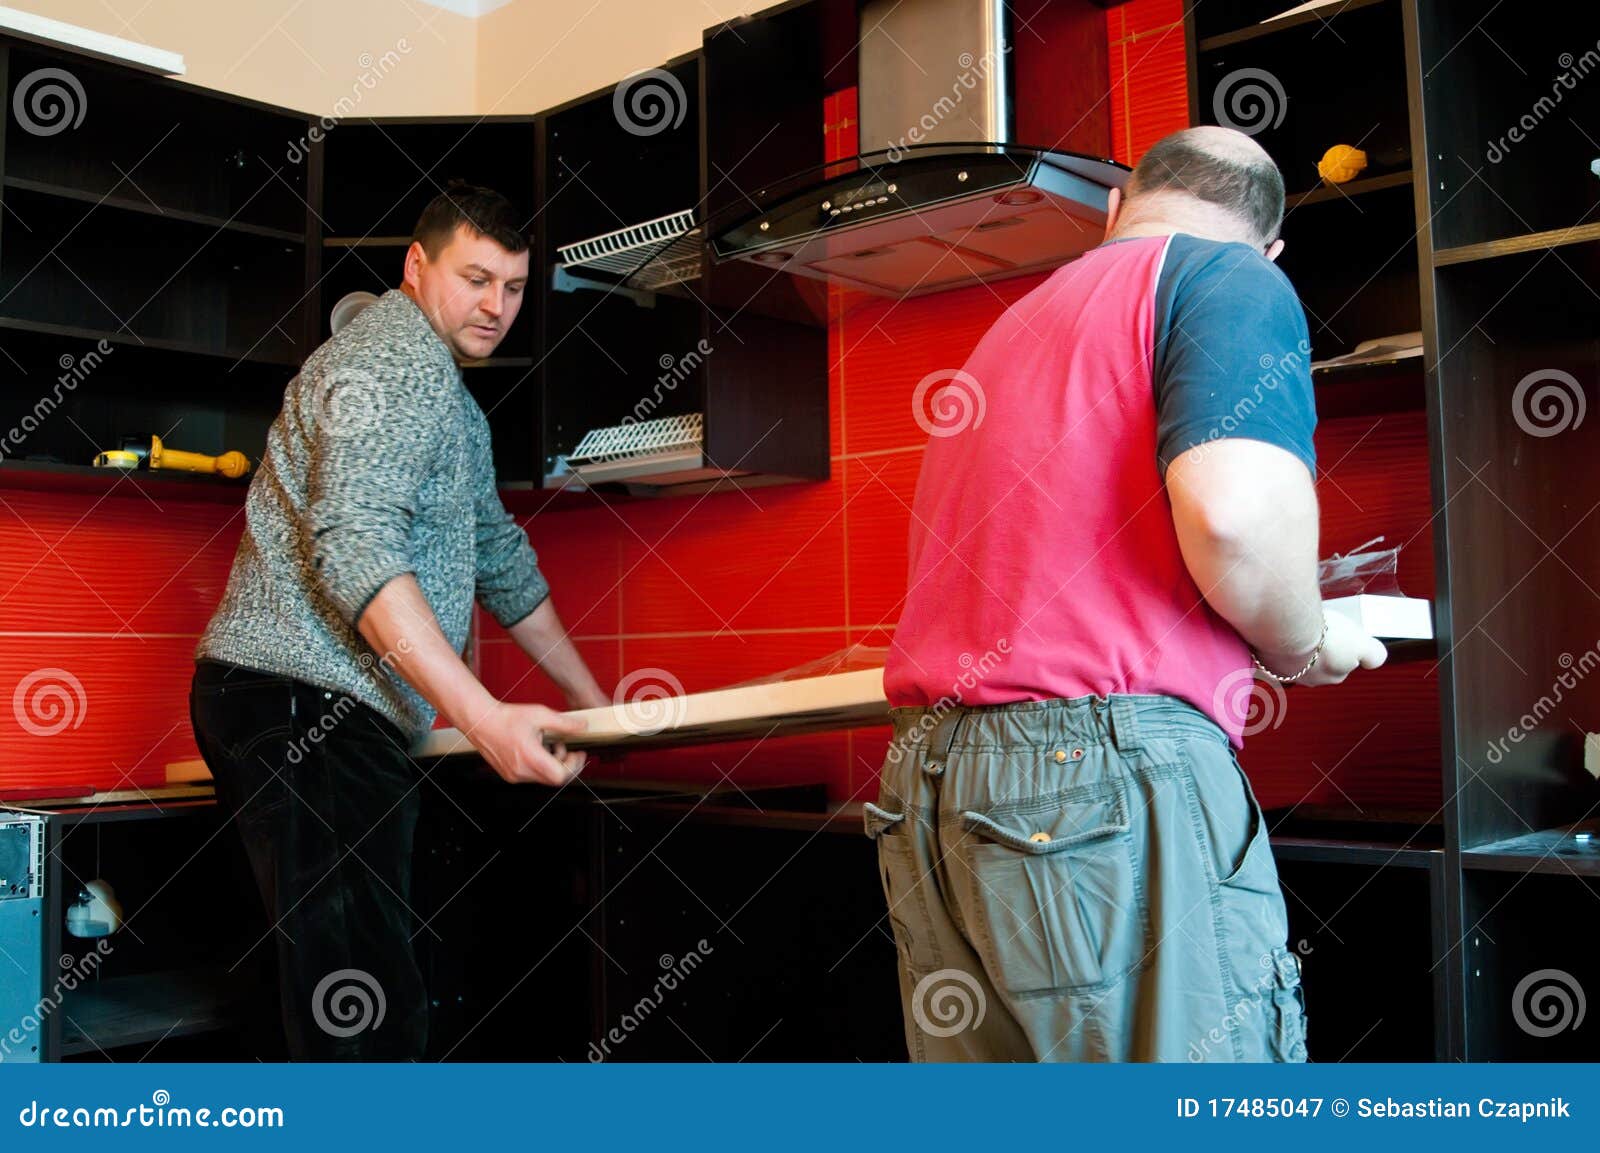 workmen fitting kitchen